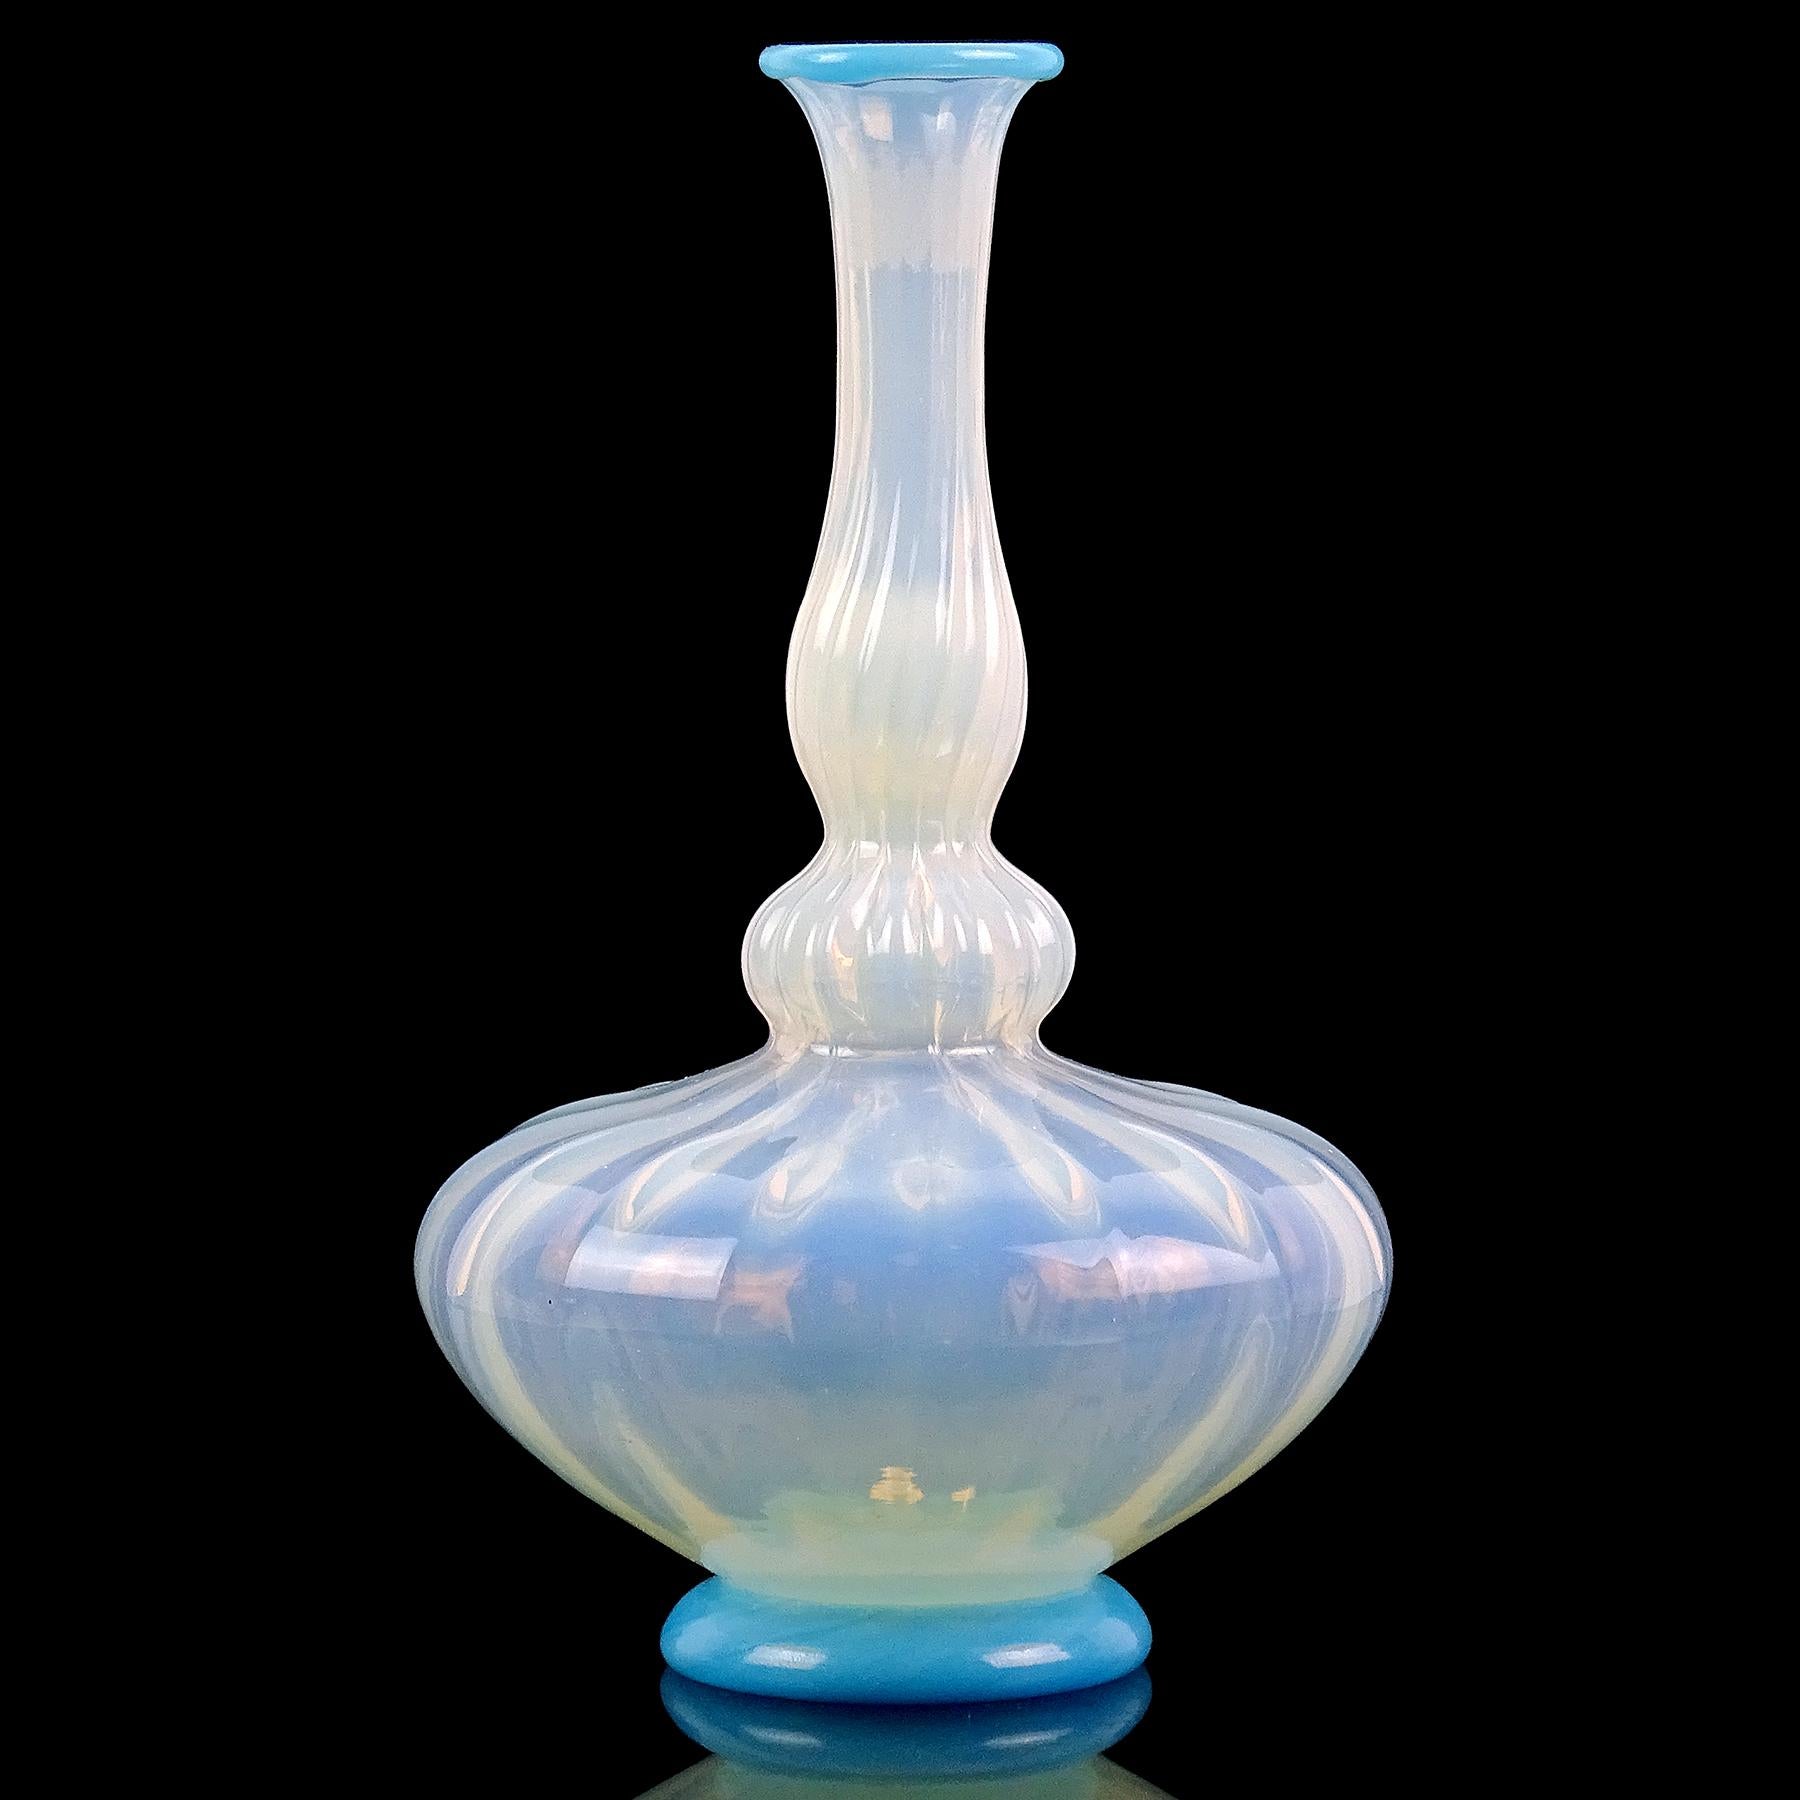 Magnifique vase en verre d'art italien opalescent blanc et bleu, soufflé à la main, de style vénitien ou du début de Murano. Il a la forme d'une bouteille de génie, avec une surface plissée sur le corps. Le bord du vase et le fond de la base ont des